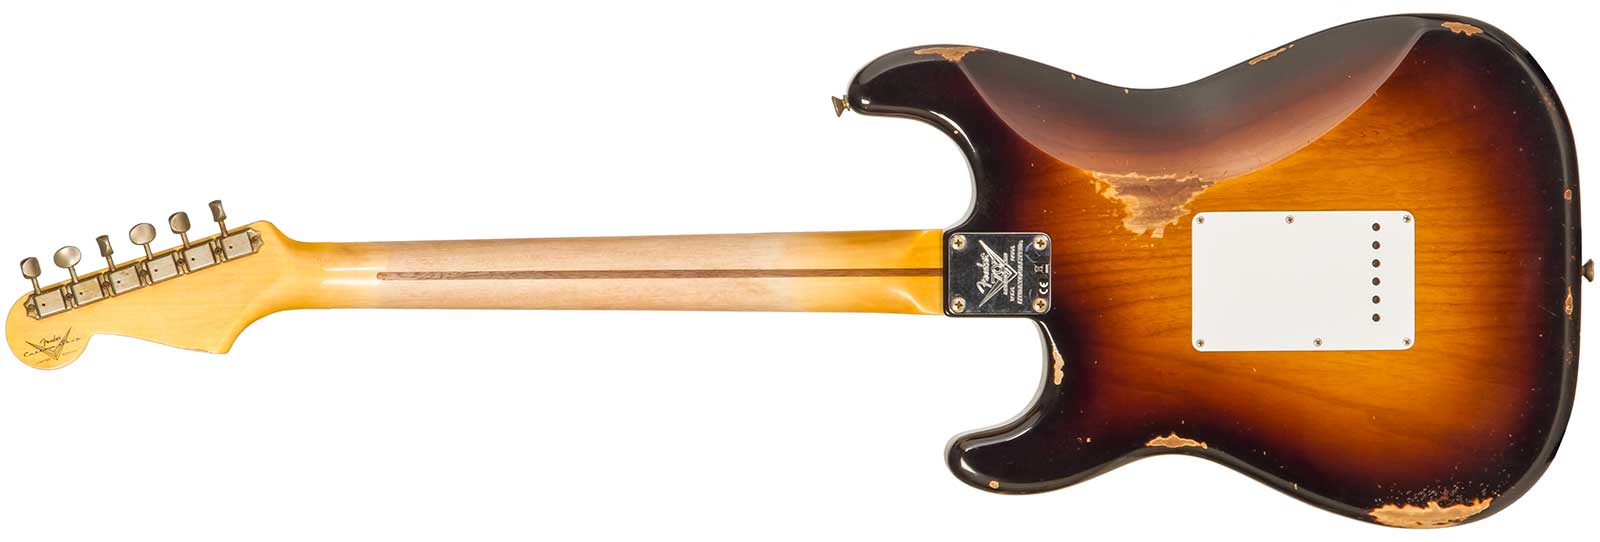 Fender Custom Shop Strat 1954 70th Anniv. 3s Trem Mn #xn4316 - Relic Wide Fade 2-color Sunburst - Str shape electric guitar - Variation 1